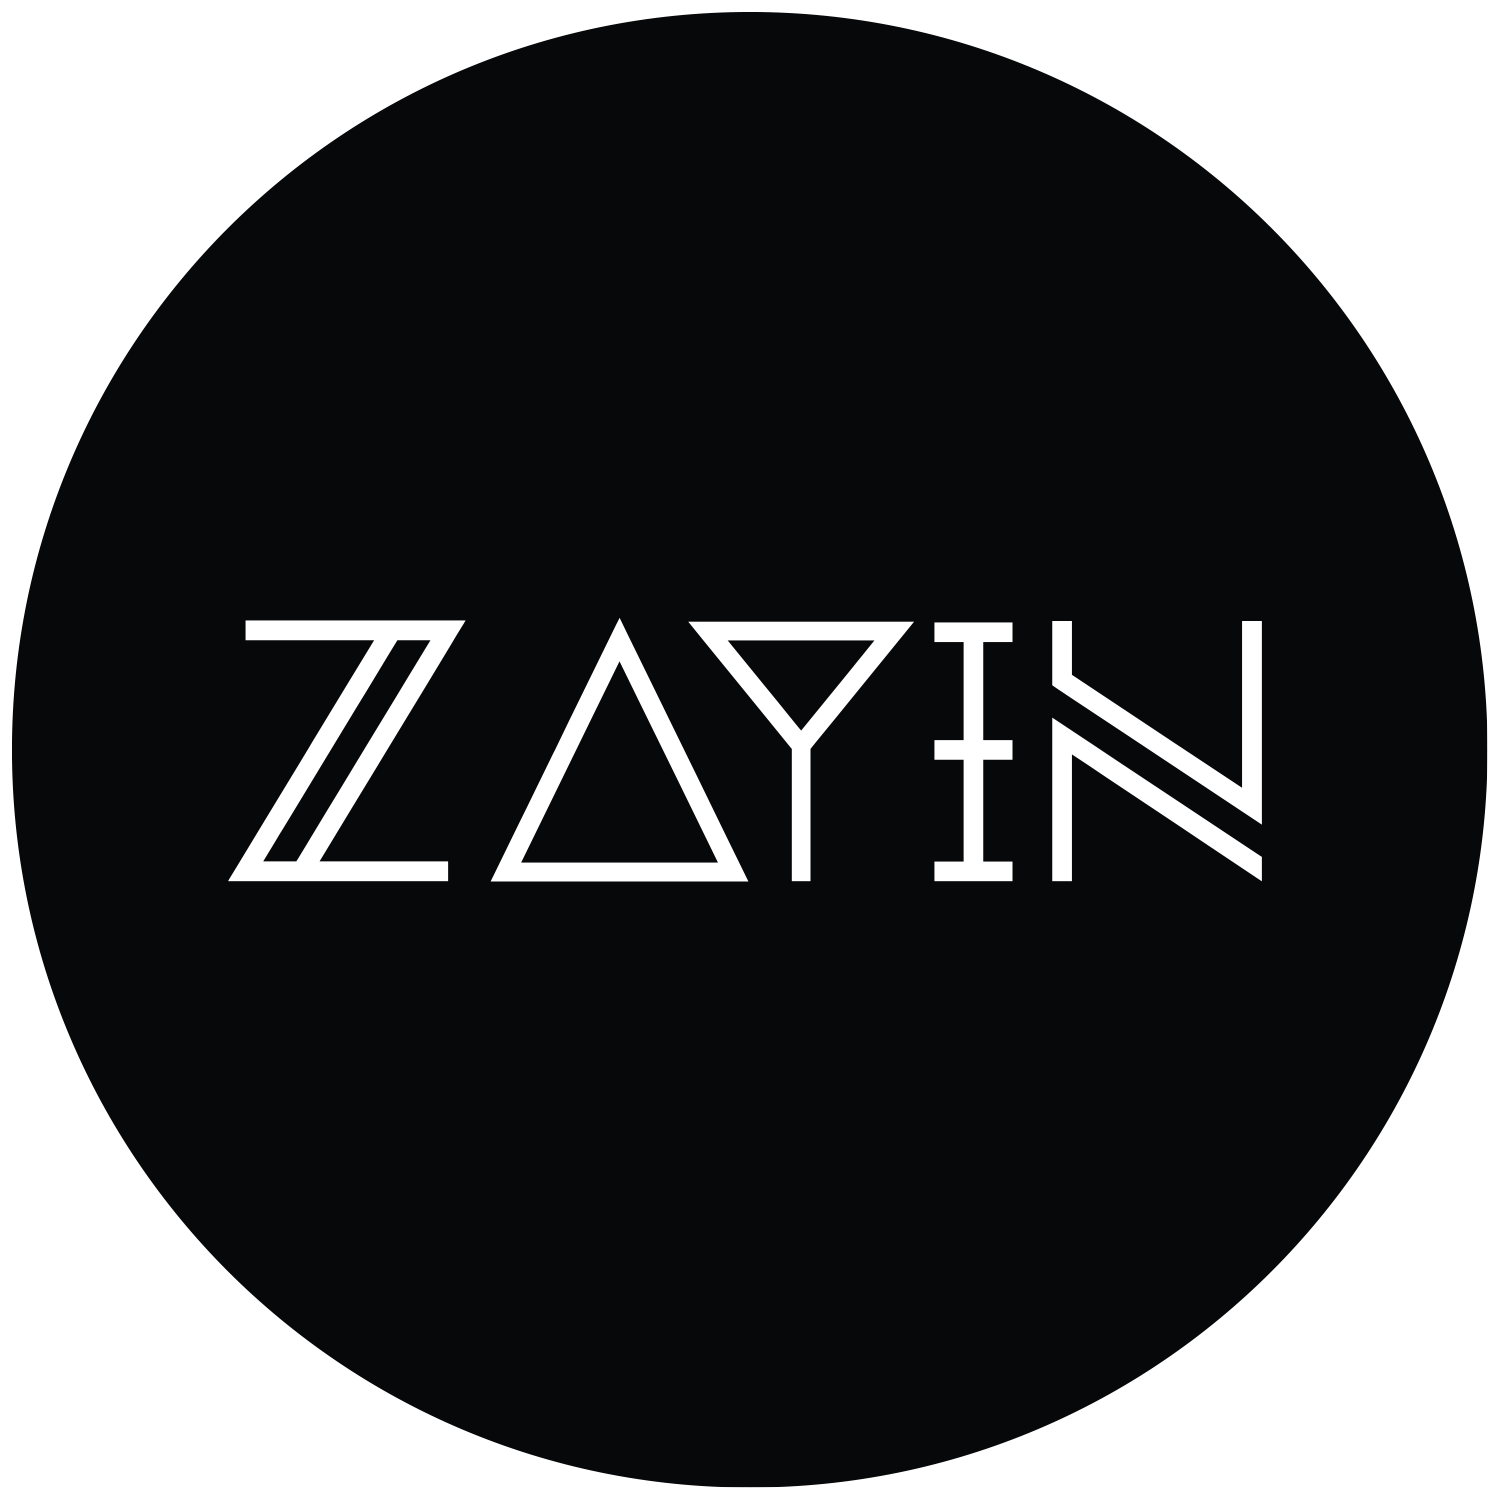 Zayin